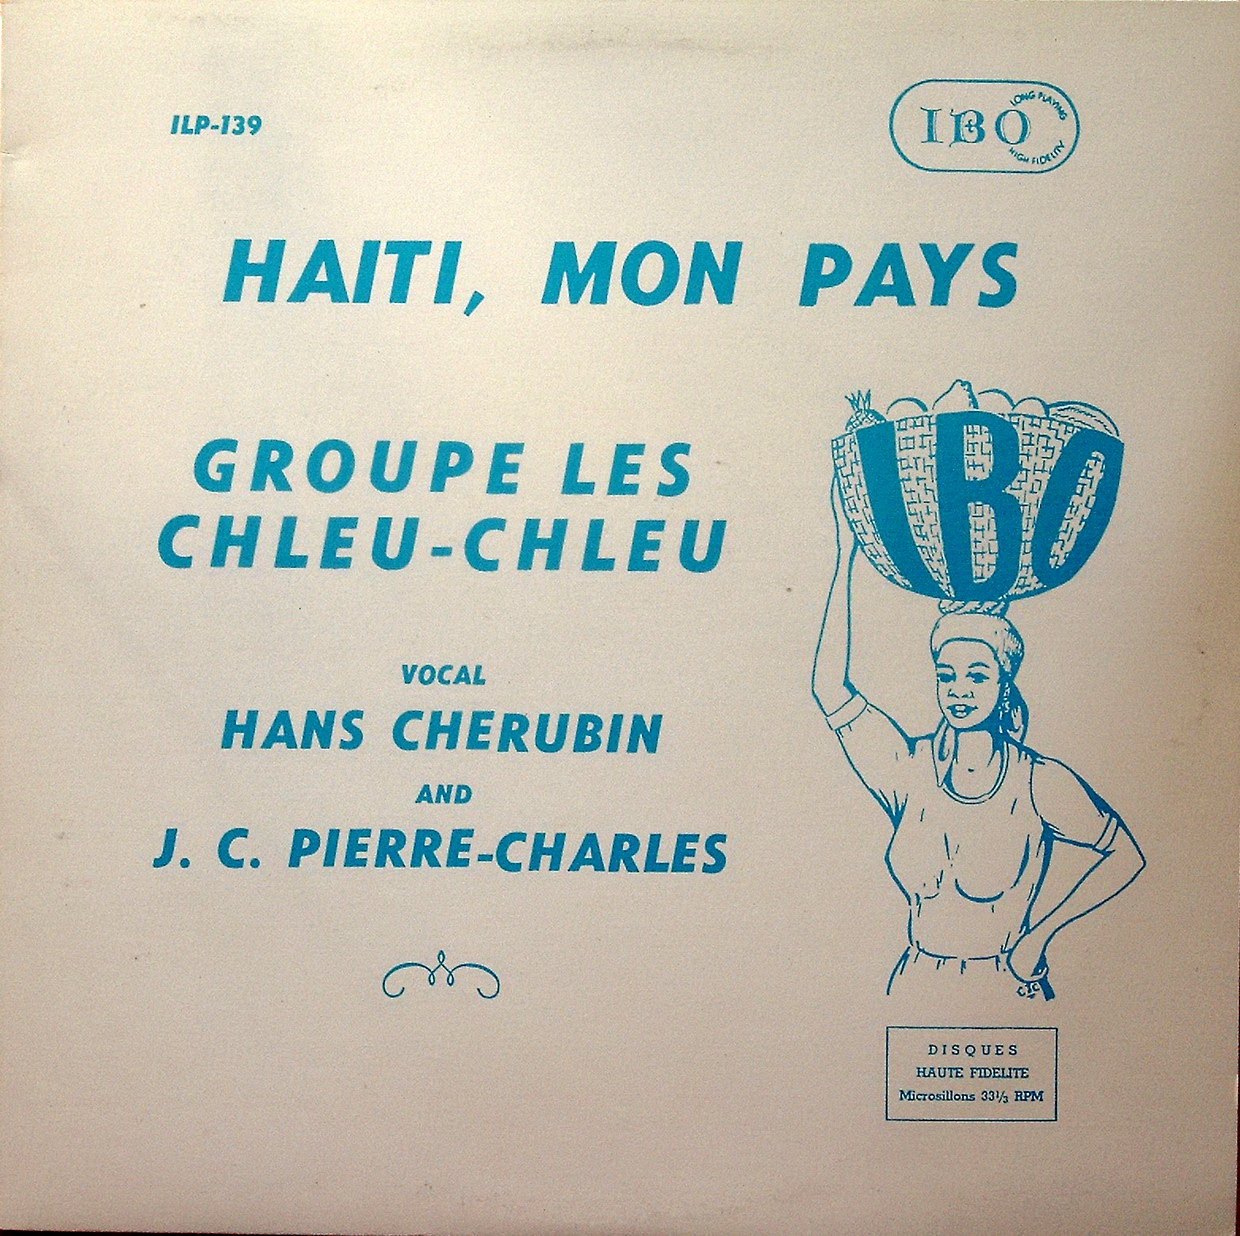  les chleu chleu - haiti, mon pays (1967)  Ilp-139